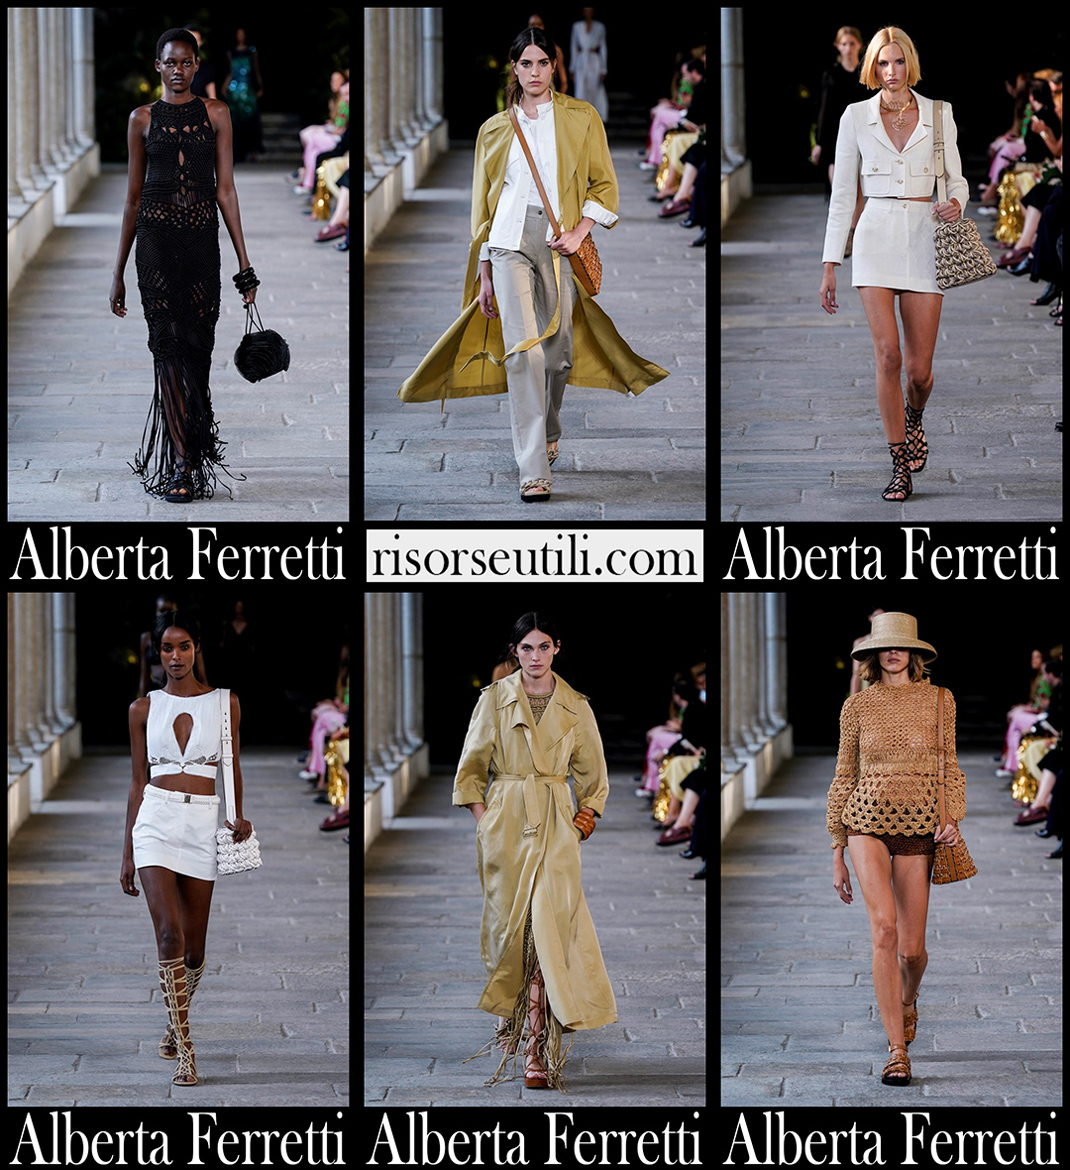 Alberta Ferretti spring summer 2022 fashion collection